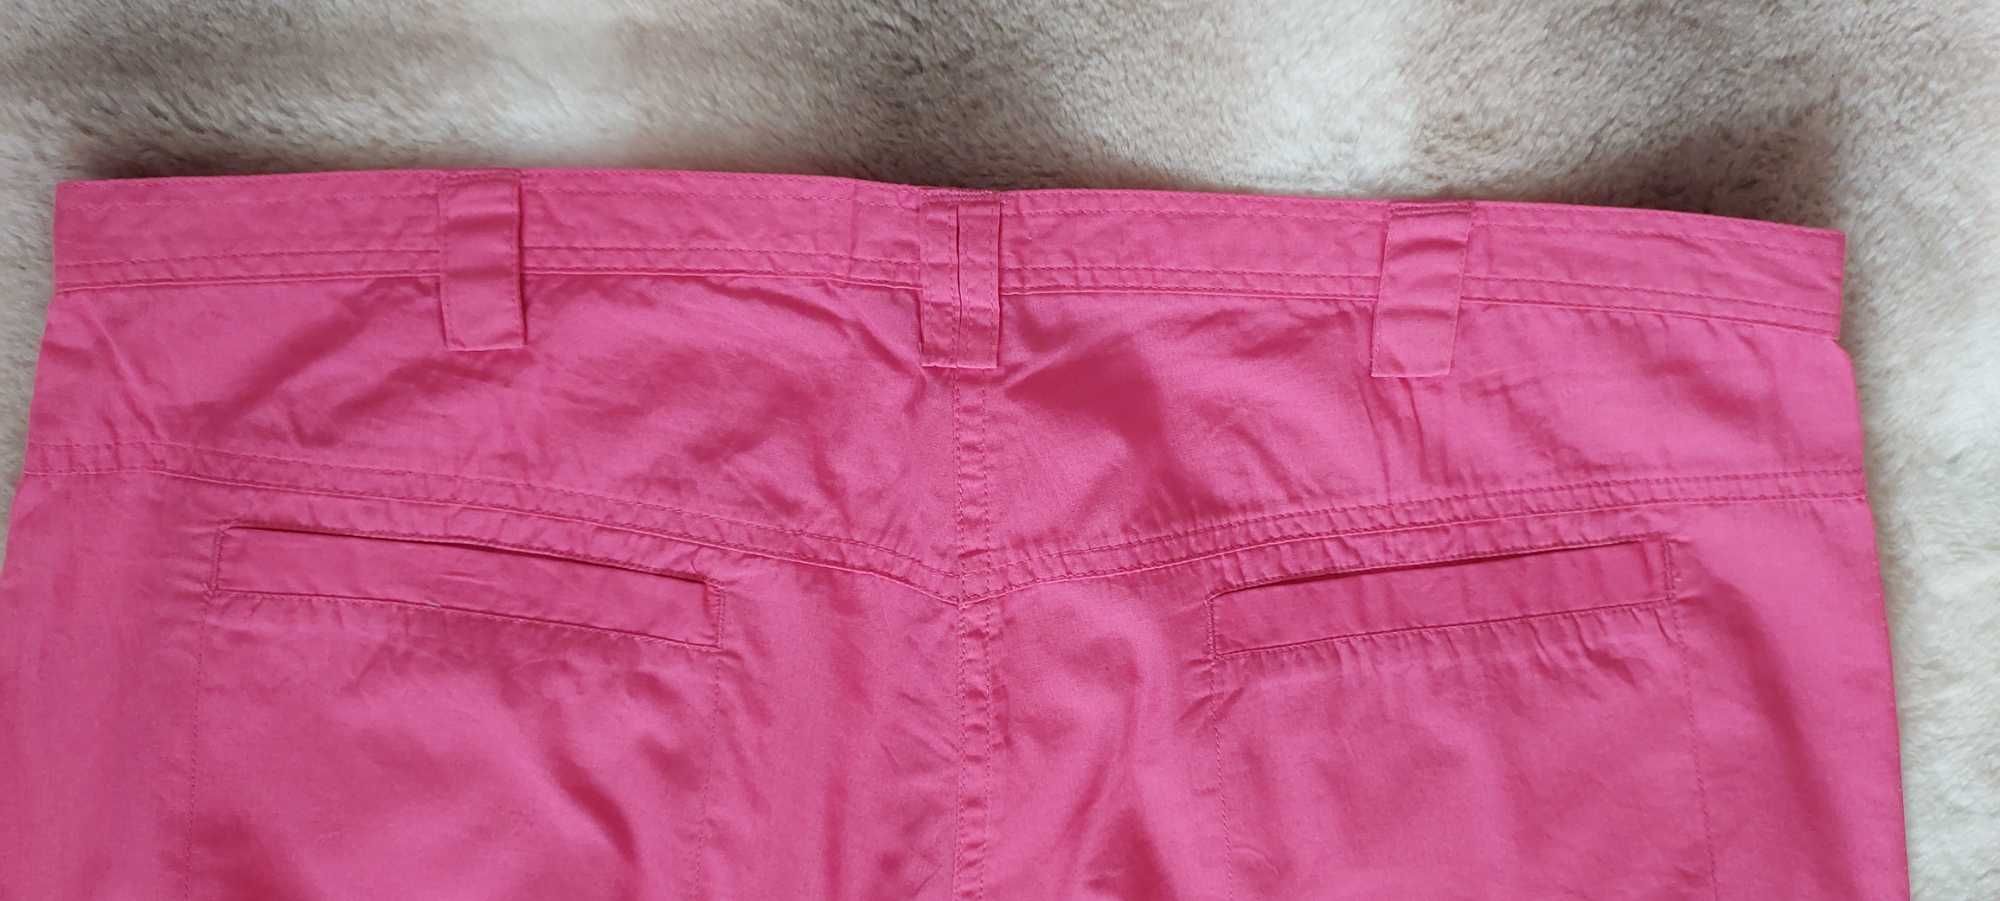 Spodnie różowe 100% bawełna